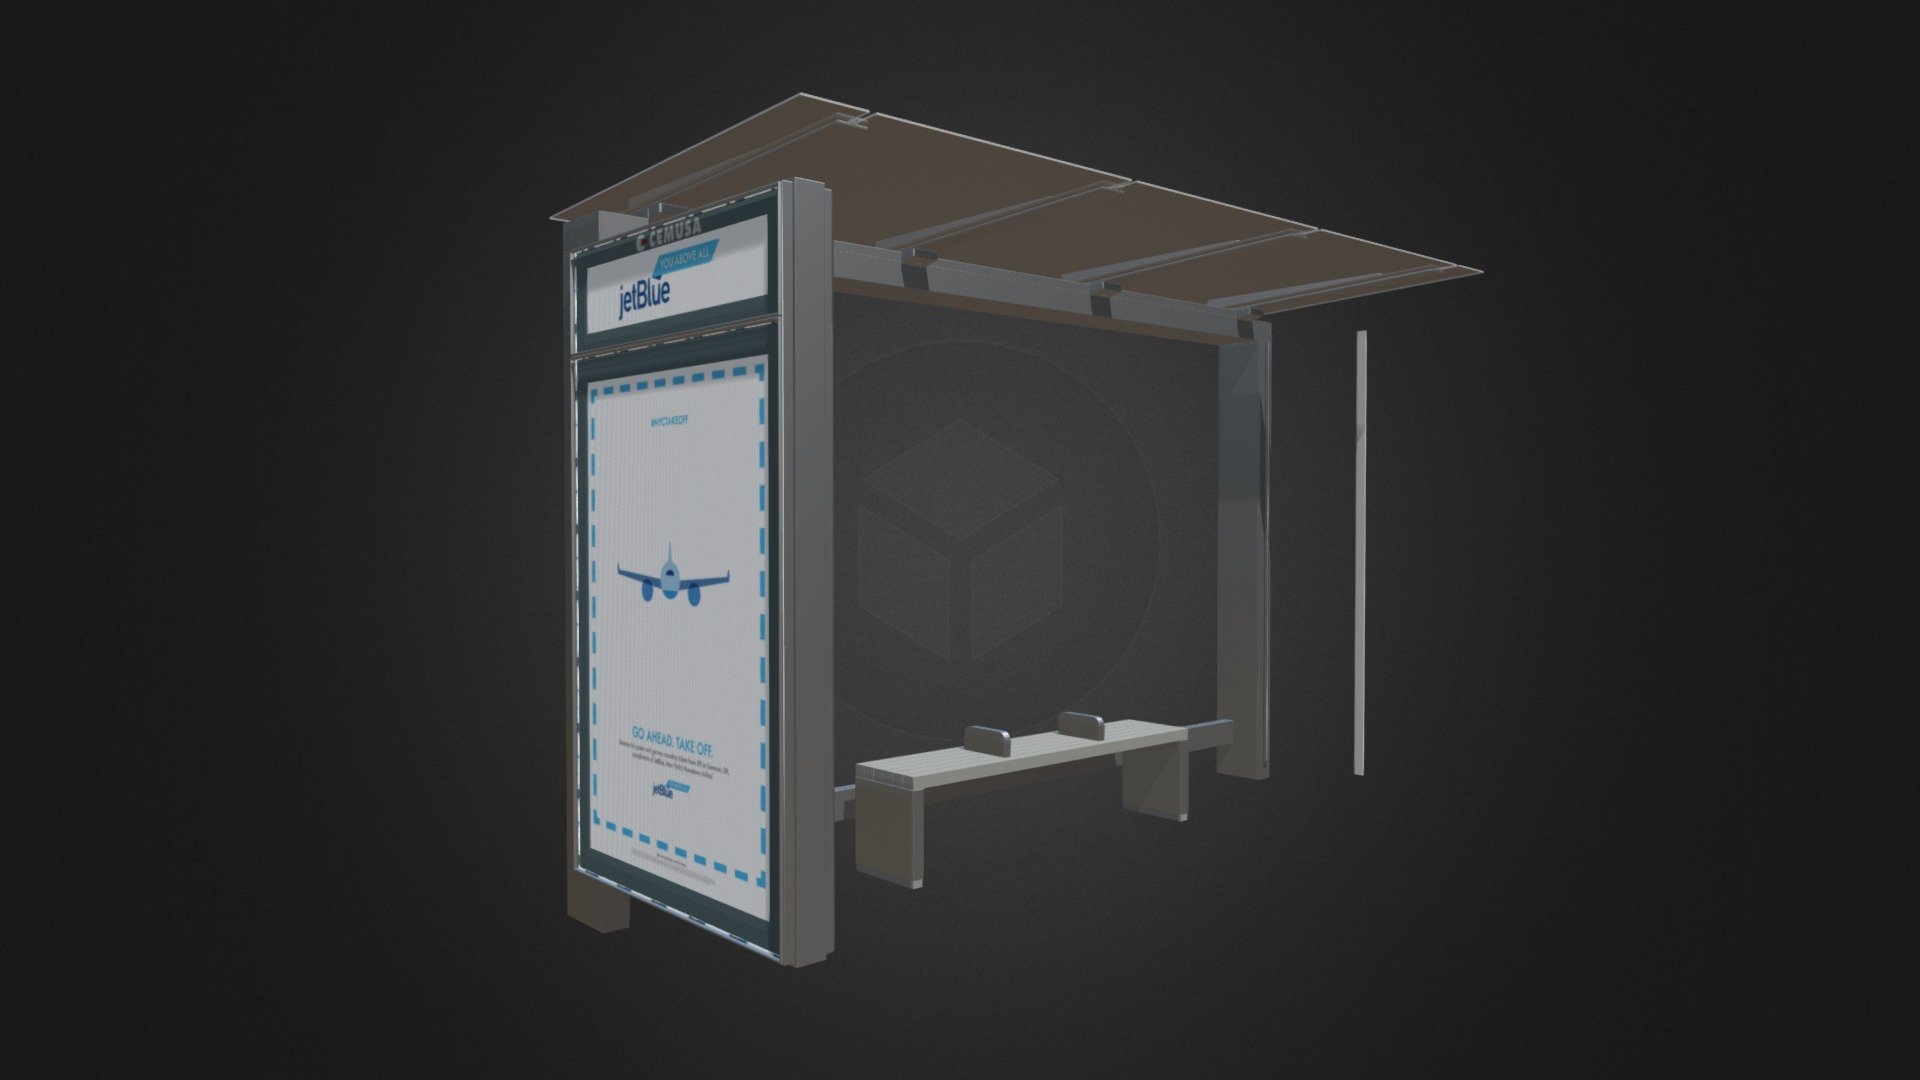 New York Bus Shelter - New York Bus Shelter - 3D model by Vizmodels (@DmitryGolikov) 3d model